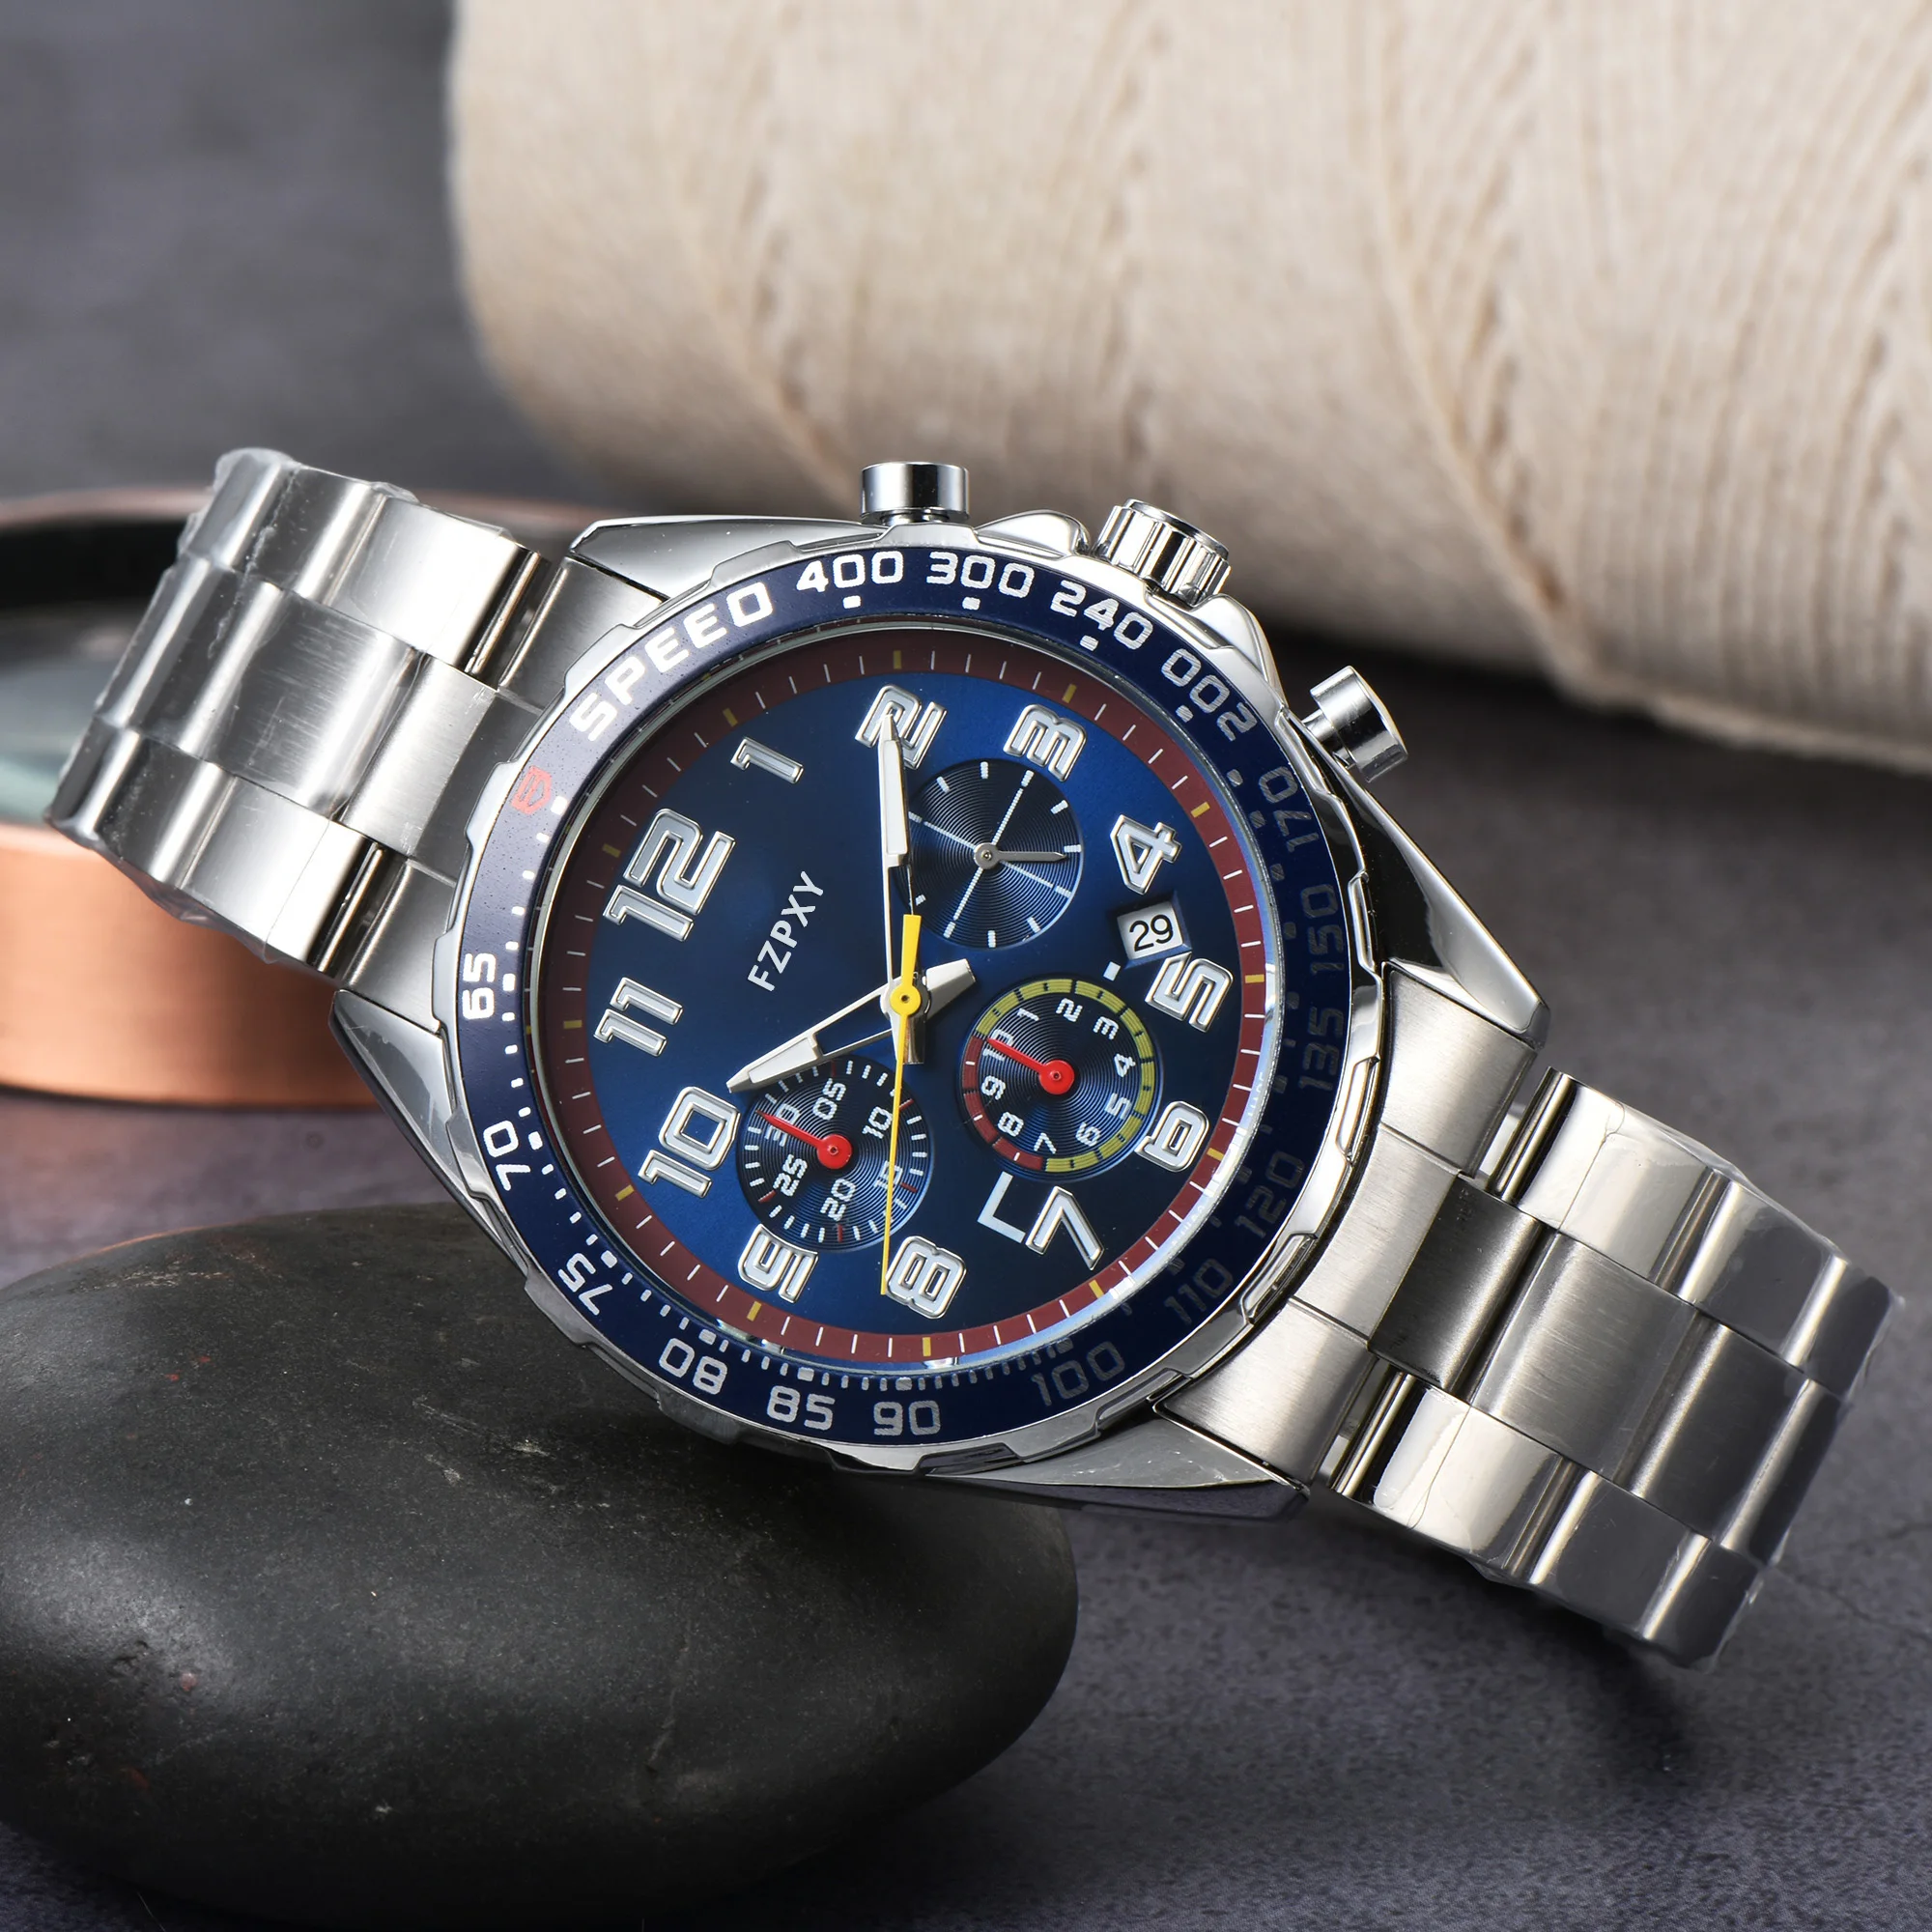 

Часы наручные TA114 мужские/женские с хронографом, брендовые многофункциональные классические стальные, в деловом стиле, ААА